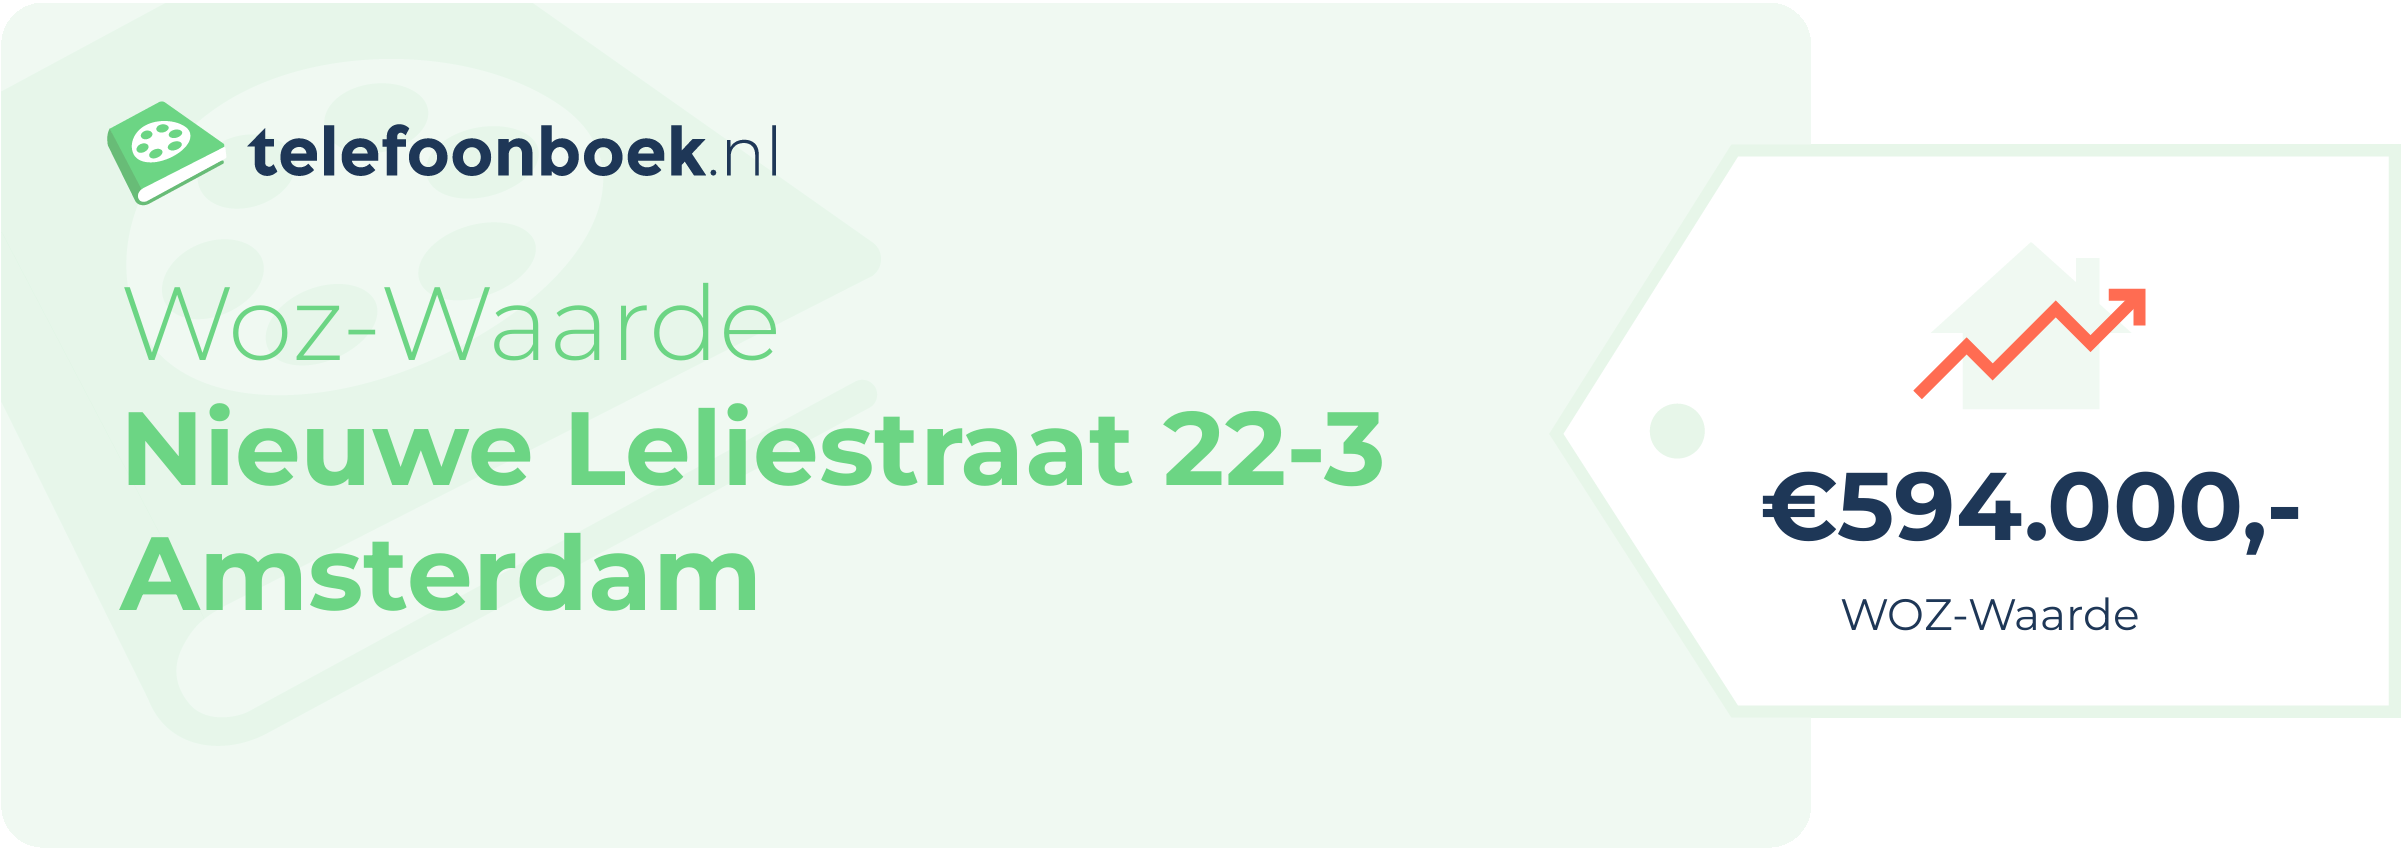 WOZ-waarde Nieuwe Leliestraat 22-3 Amsterdam